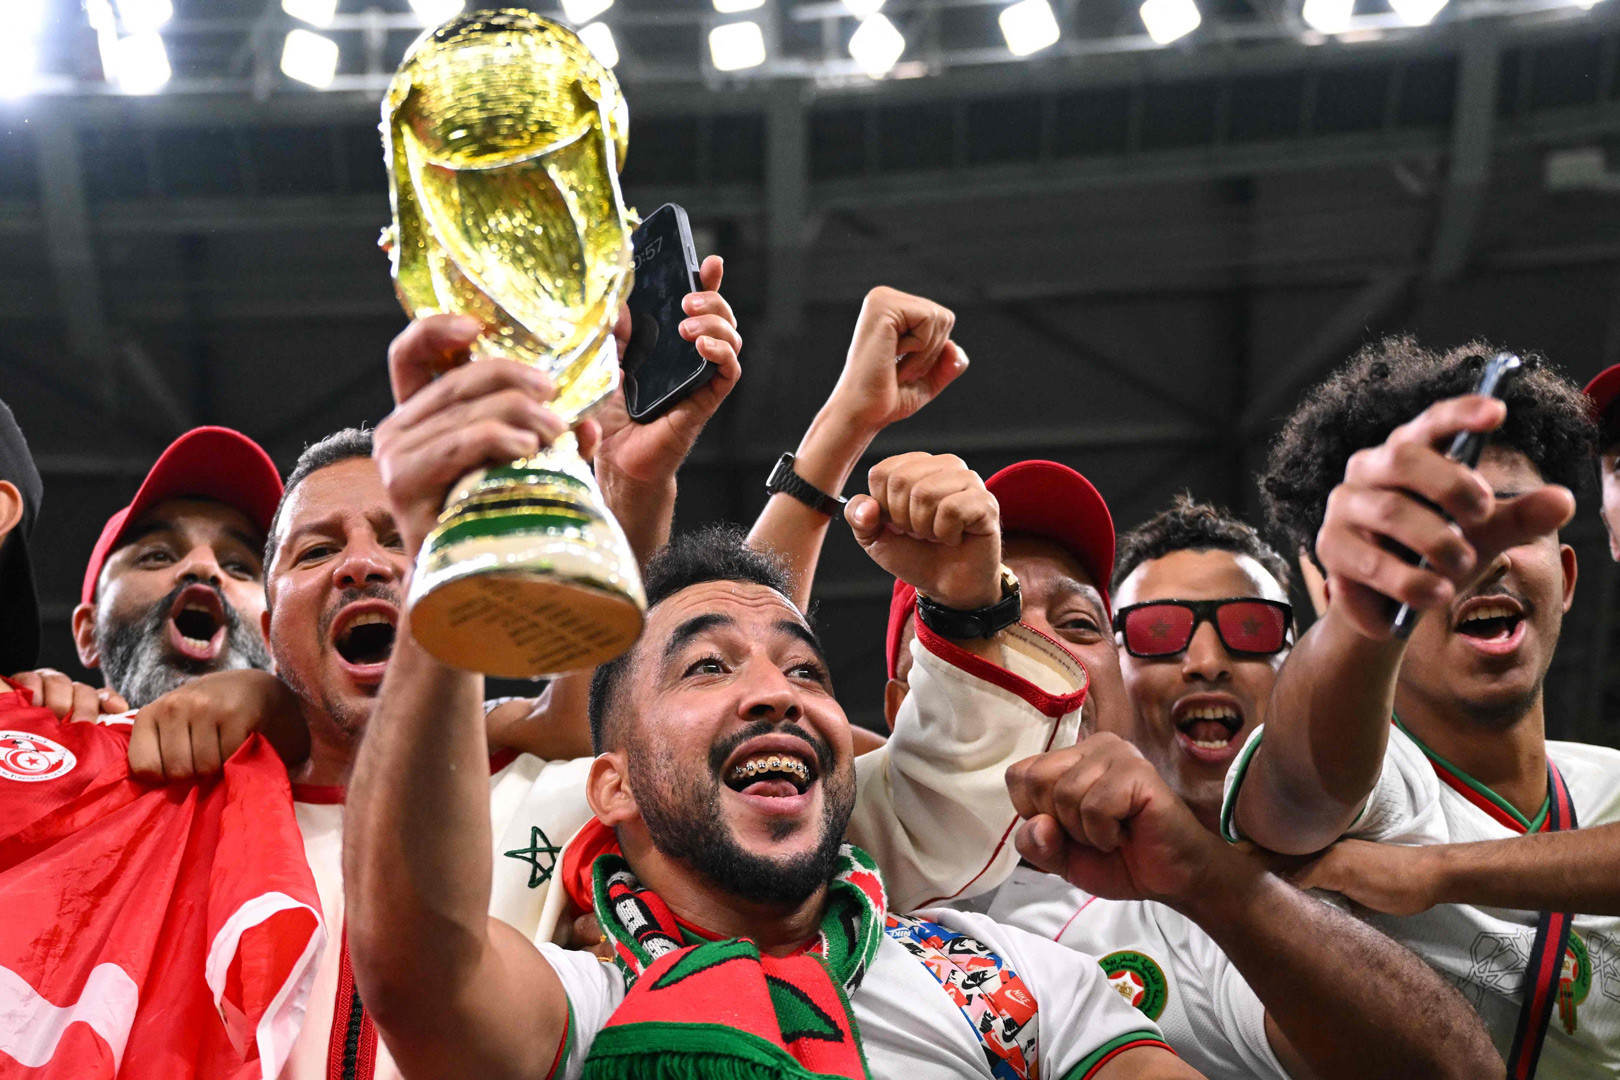 Ký sự World Cup 2022: Từ heo đất đến cổ tích Maroc - ảnh 2